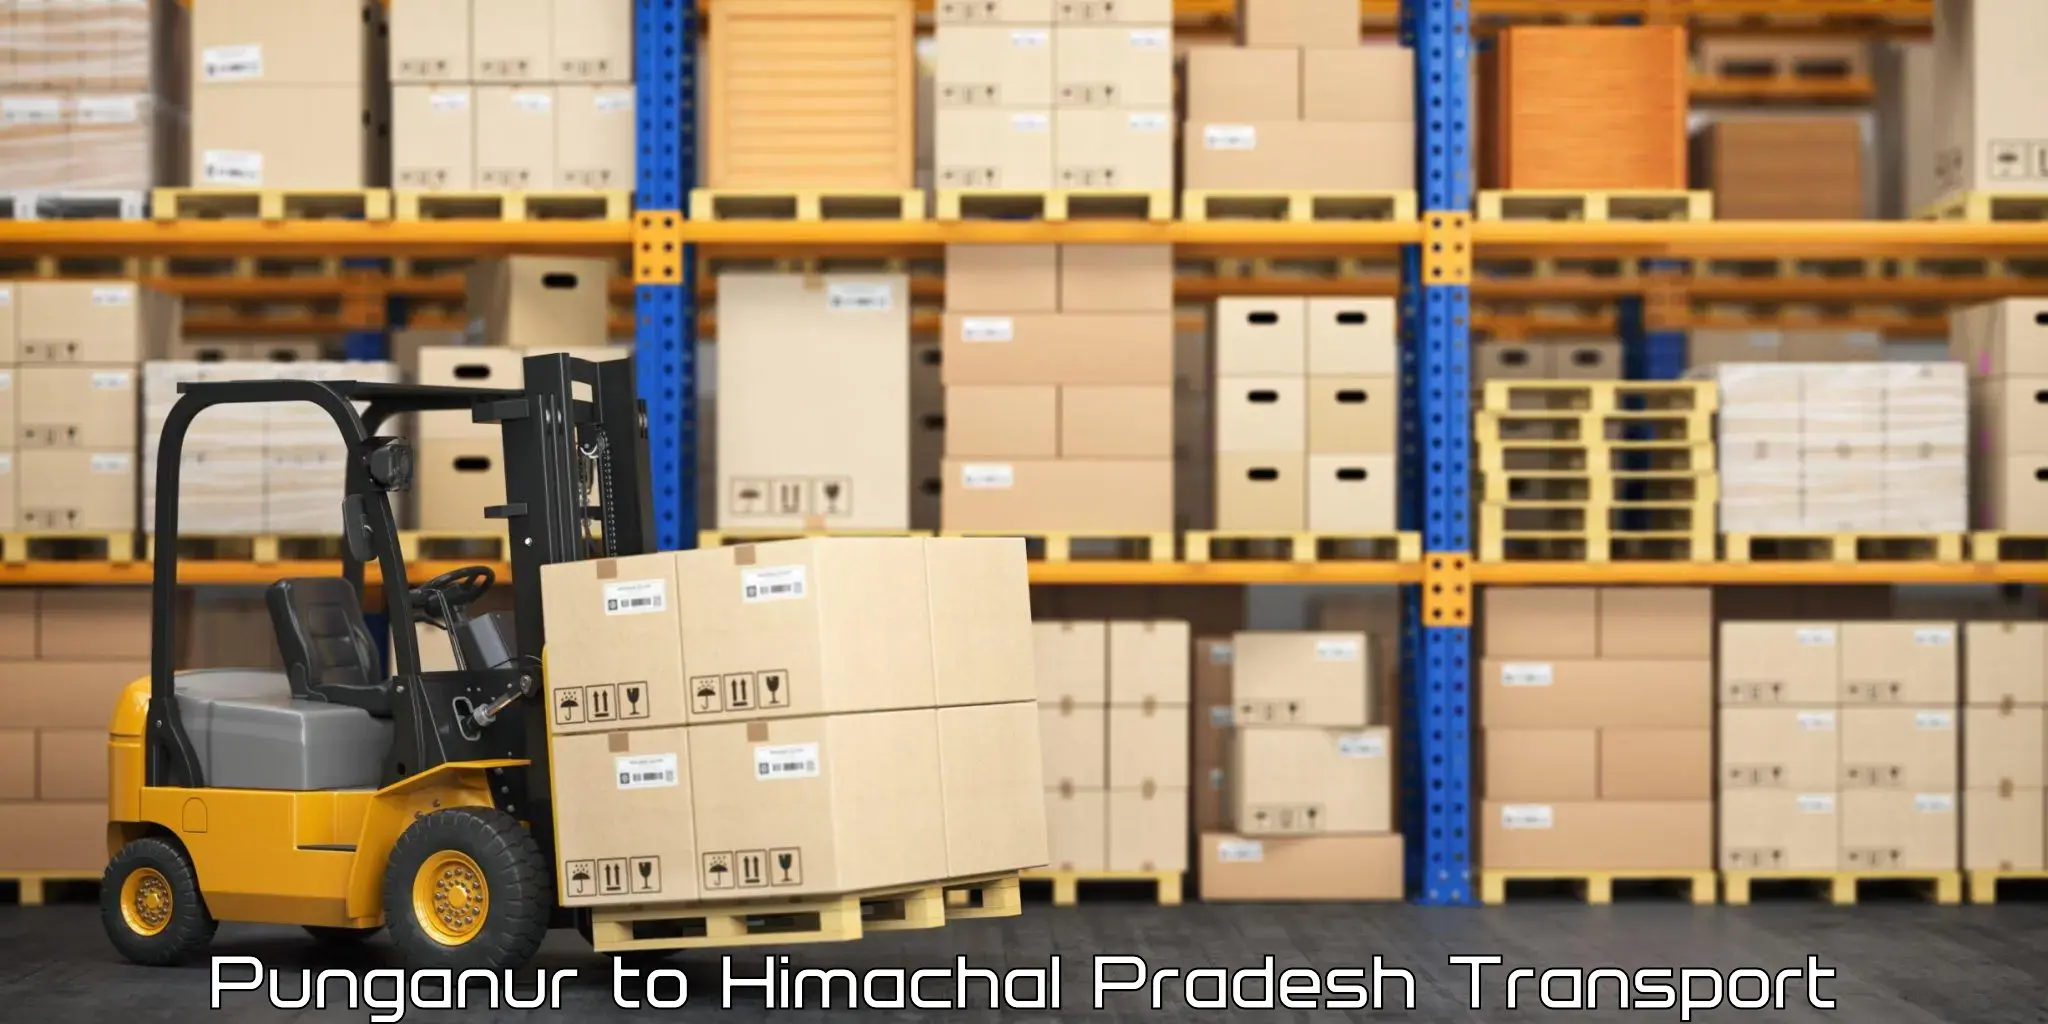 India truck logistics services in Punganur to Dalhousie